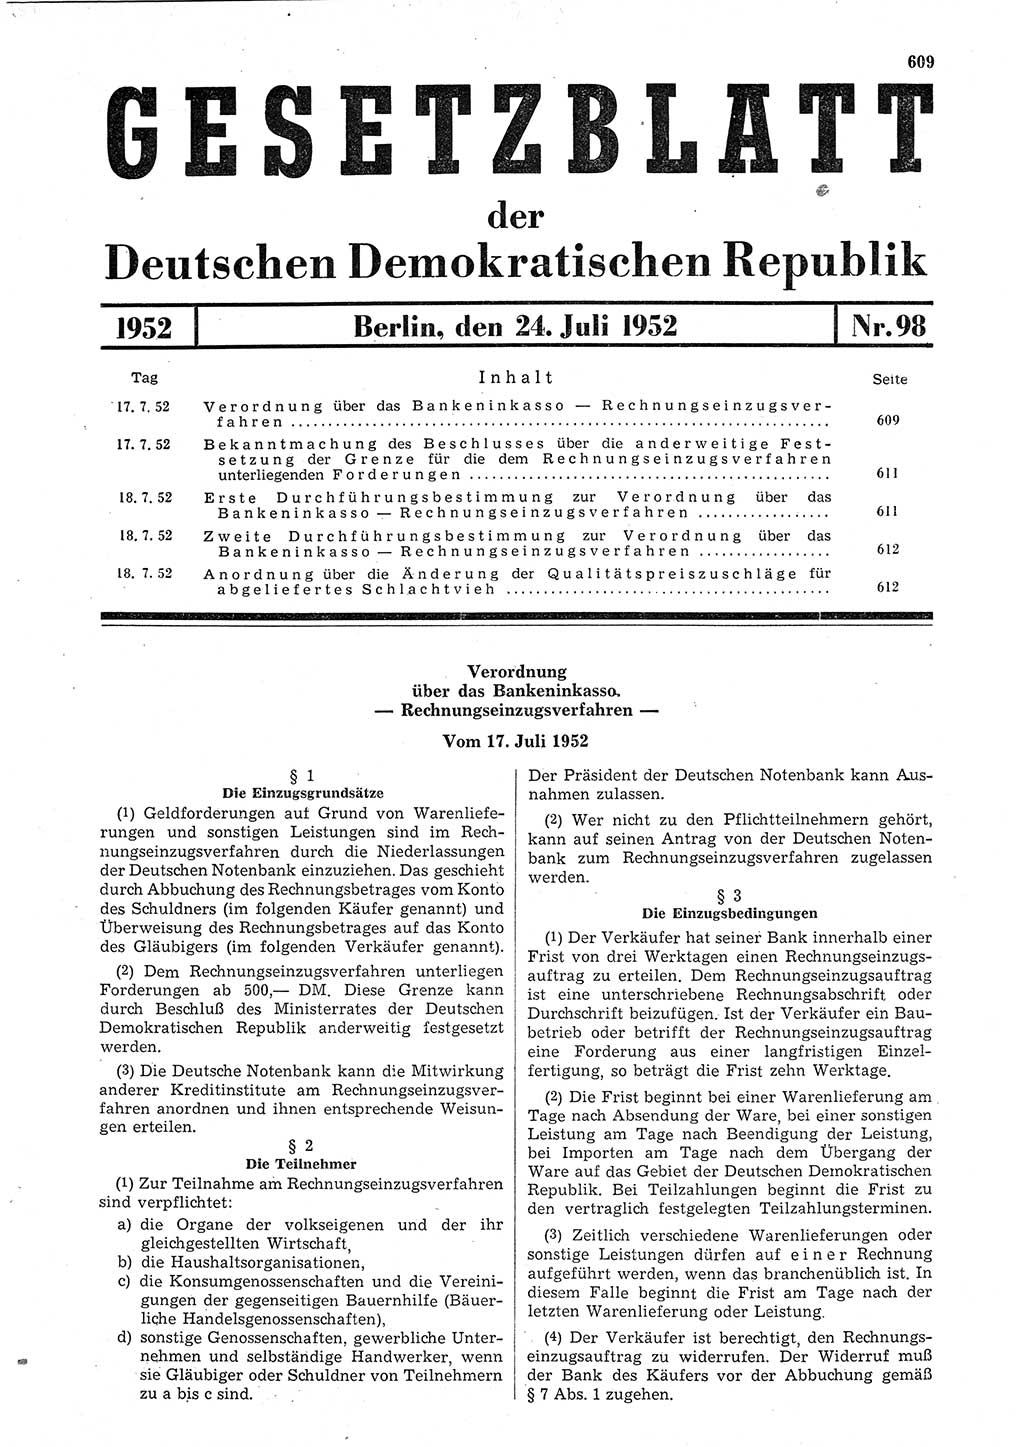 Gesetzblatt (GBl.) der Deutschen Demokratischen Republik (DDR) 1952, Seite 609 (GBl. DDR 1952, S. 609)